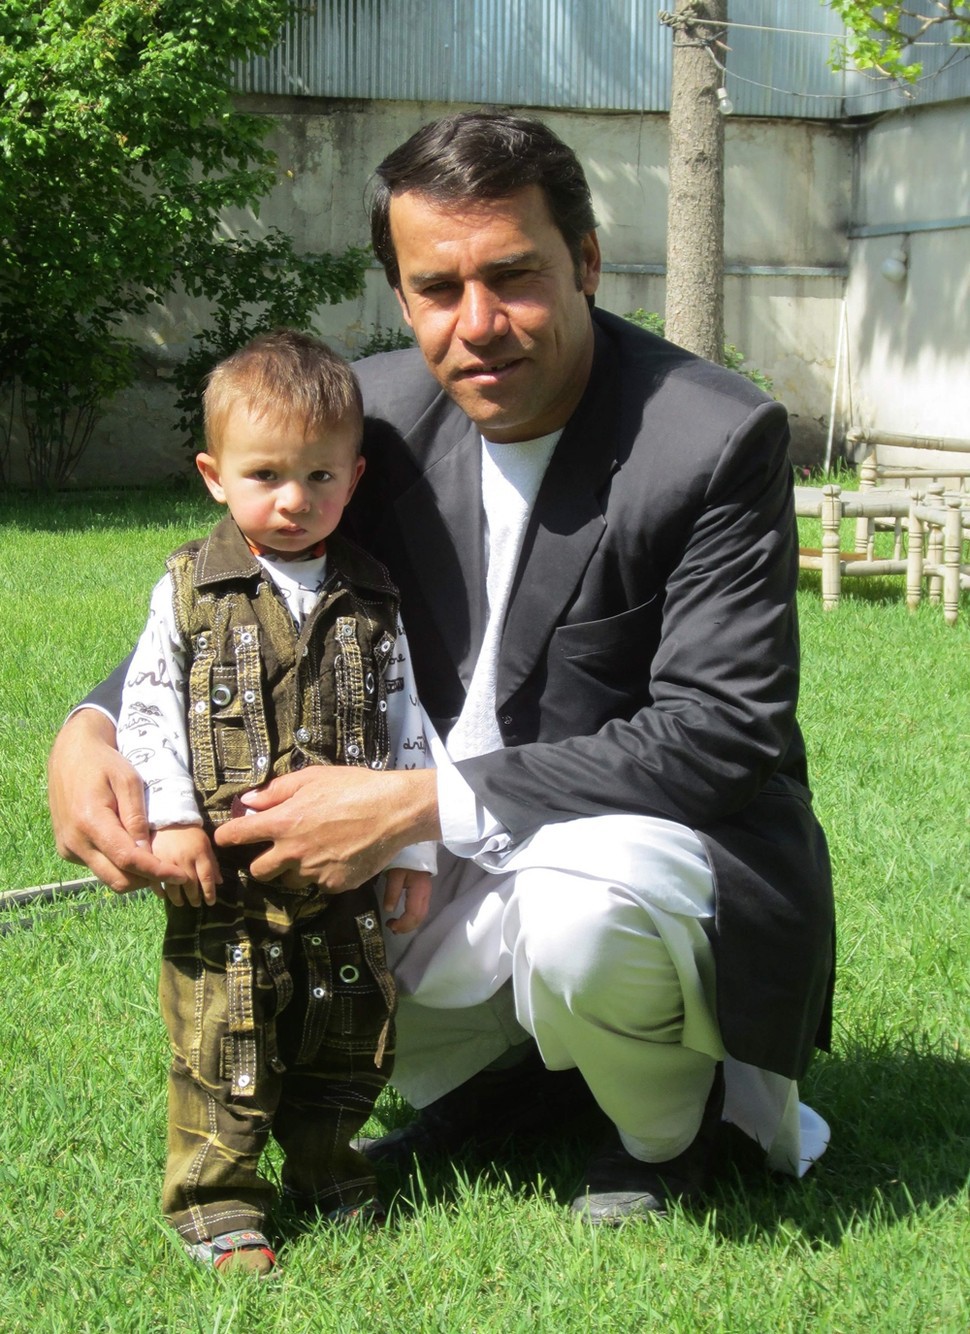 샤 마라이가 2013년 카불에서 어린 아들과 함께 사진을 찍었다.